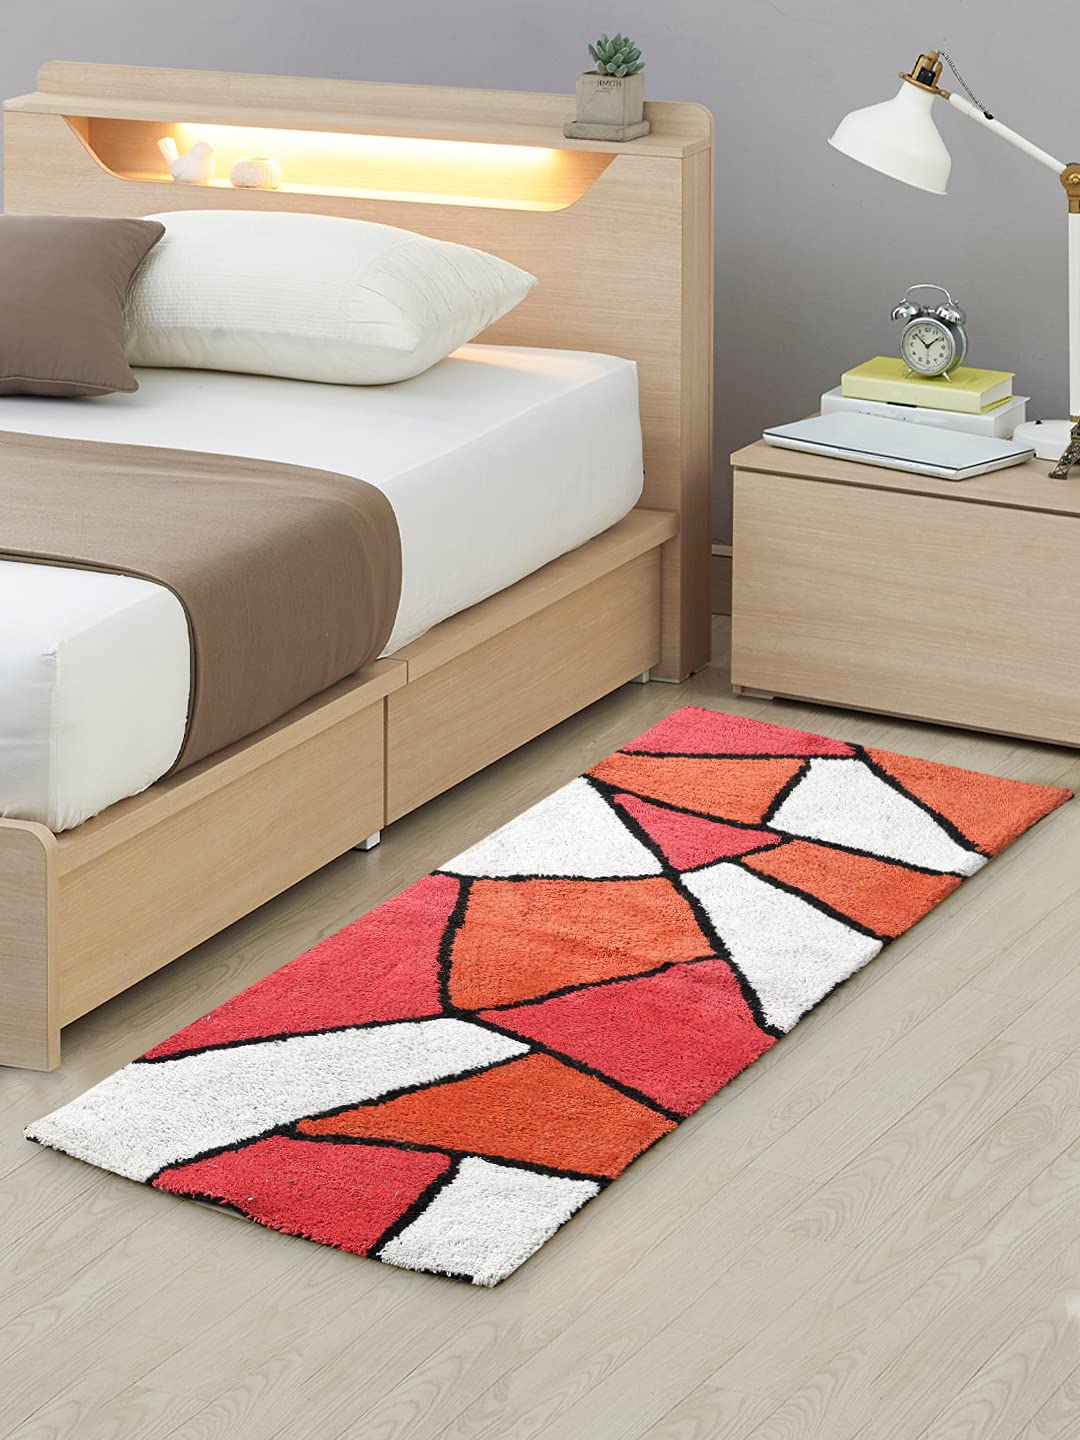 Floor Mats: Carpets Rug for Bedroom,20 " X 48",Cotton Rug for Living Room,Bedside Rug for Kids Room